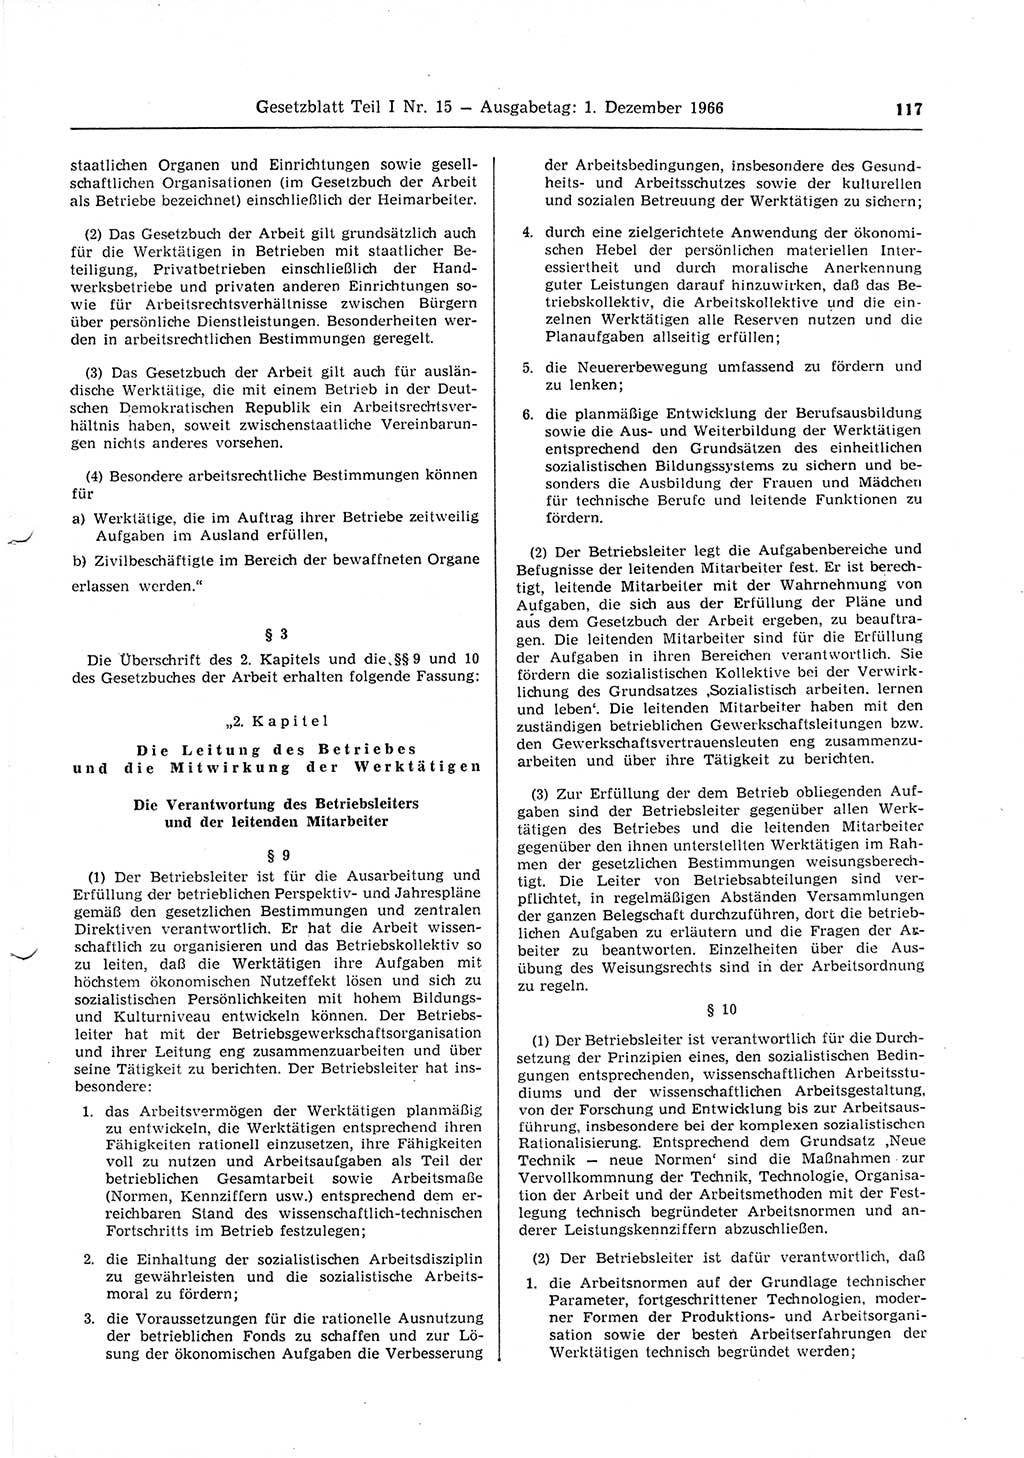 Gesetzblatt (GBl.) der Deutschen Demokratischen Republik (DDR) Teil Ⅰ 1966, Seite 117 (GBl. DDR Ⅰ 1966, S. 117)